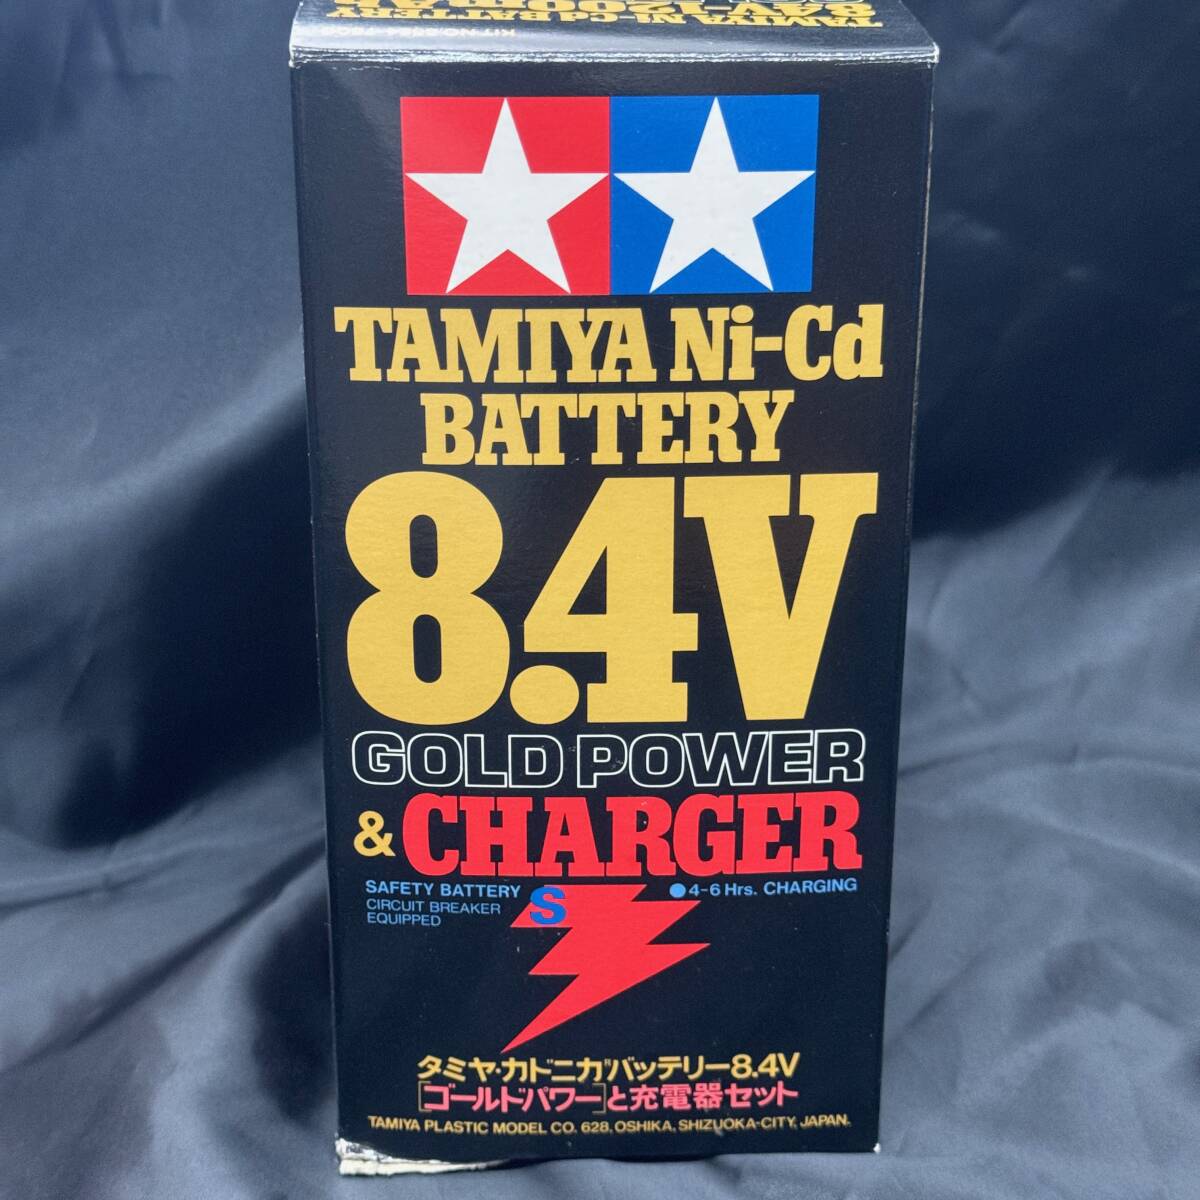  unopened new goods [ Tamiya kadonika battery 8.4V Gold power . charger set ] TAMIYA Ni-Cd BATTERY 8.4V GOLD POWER & CHARGER s